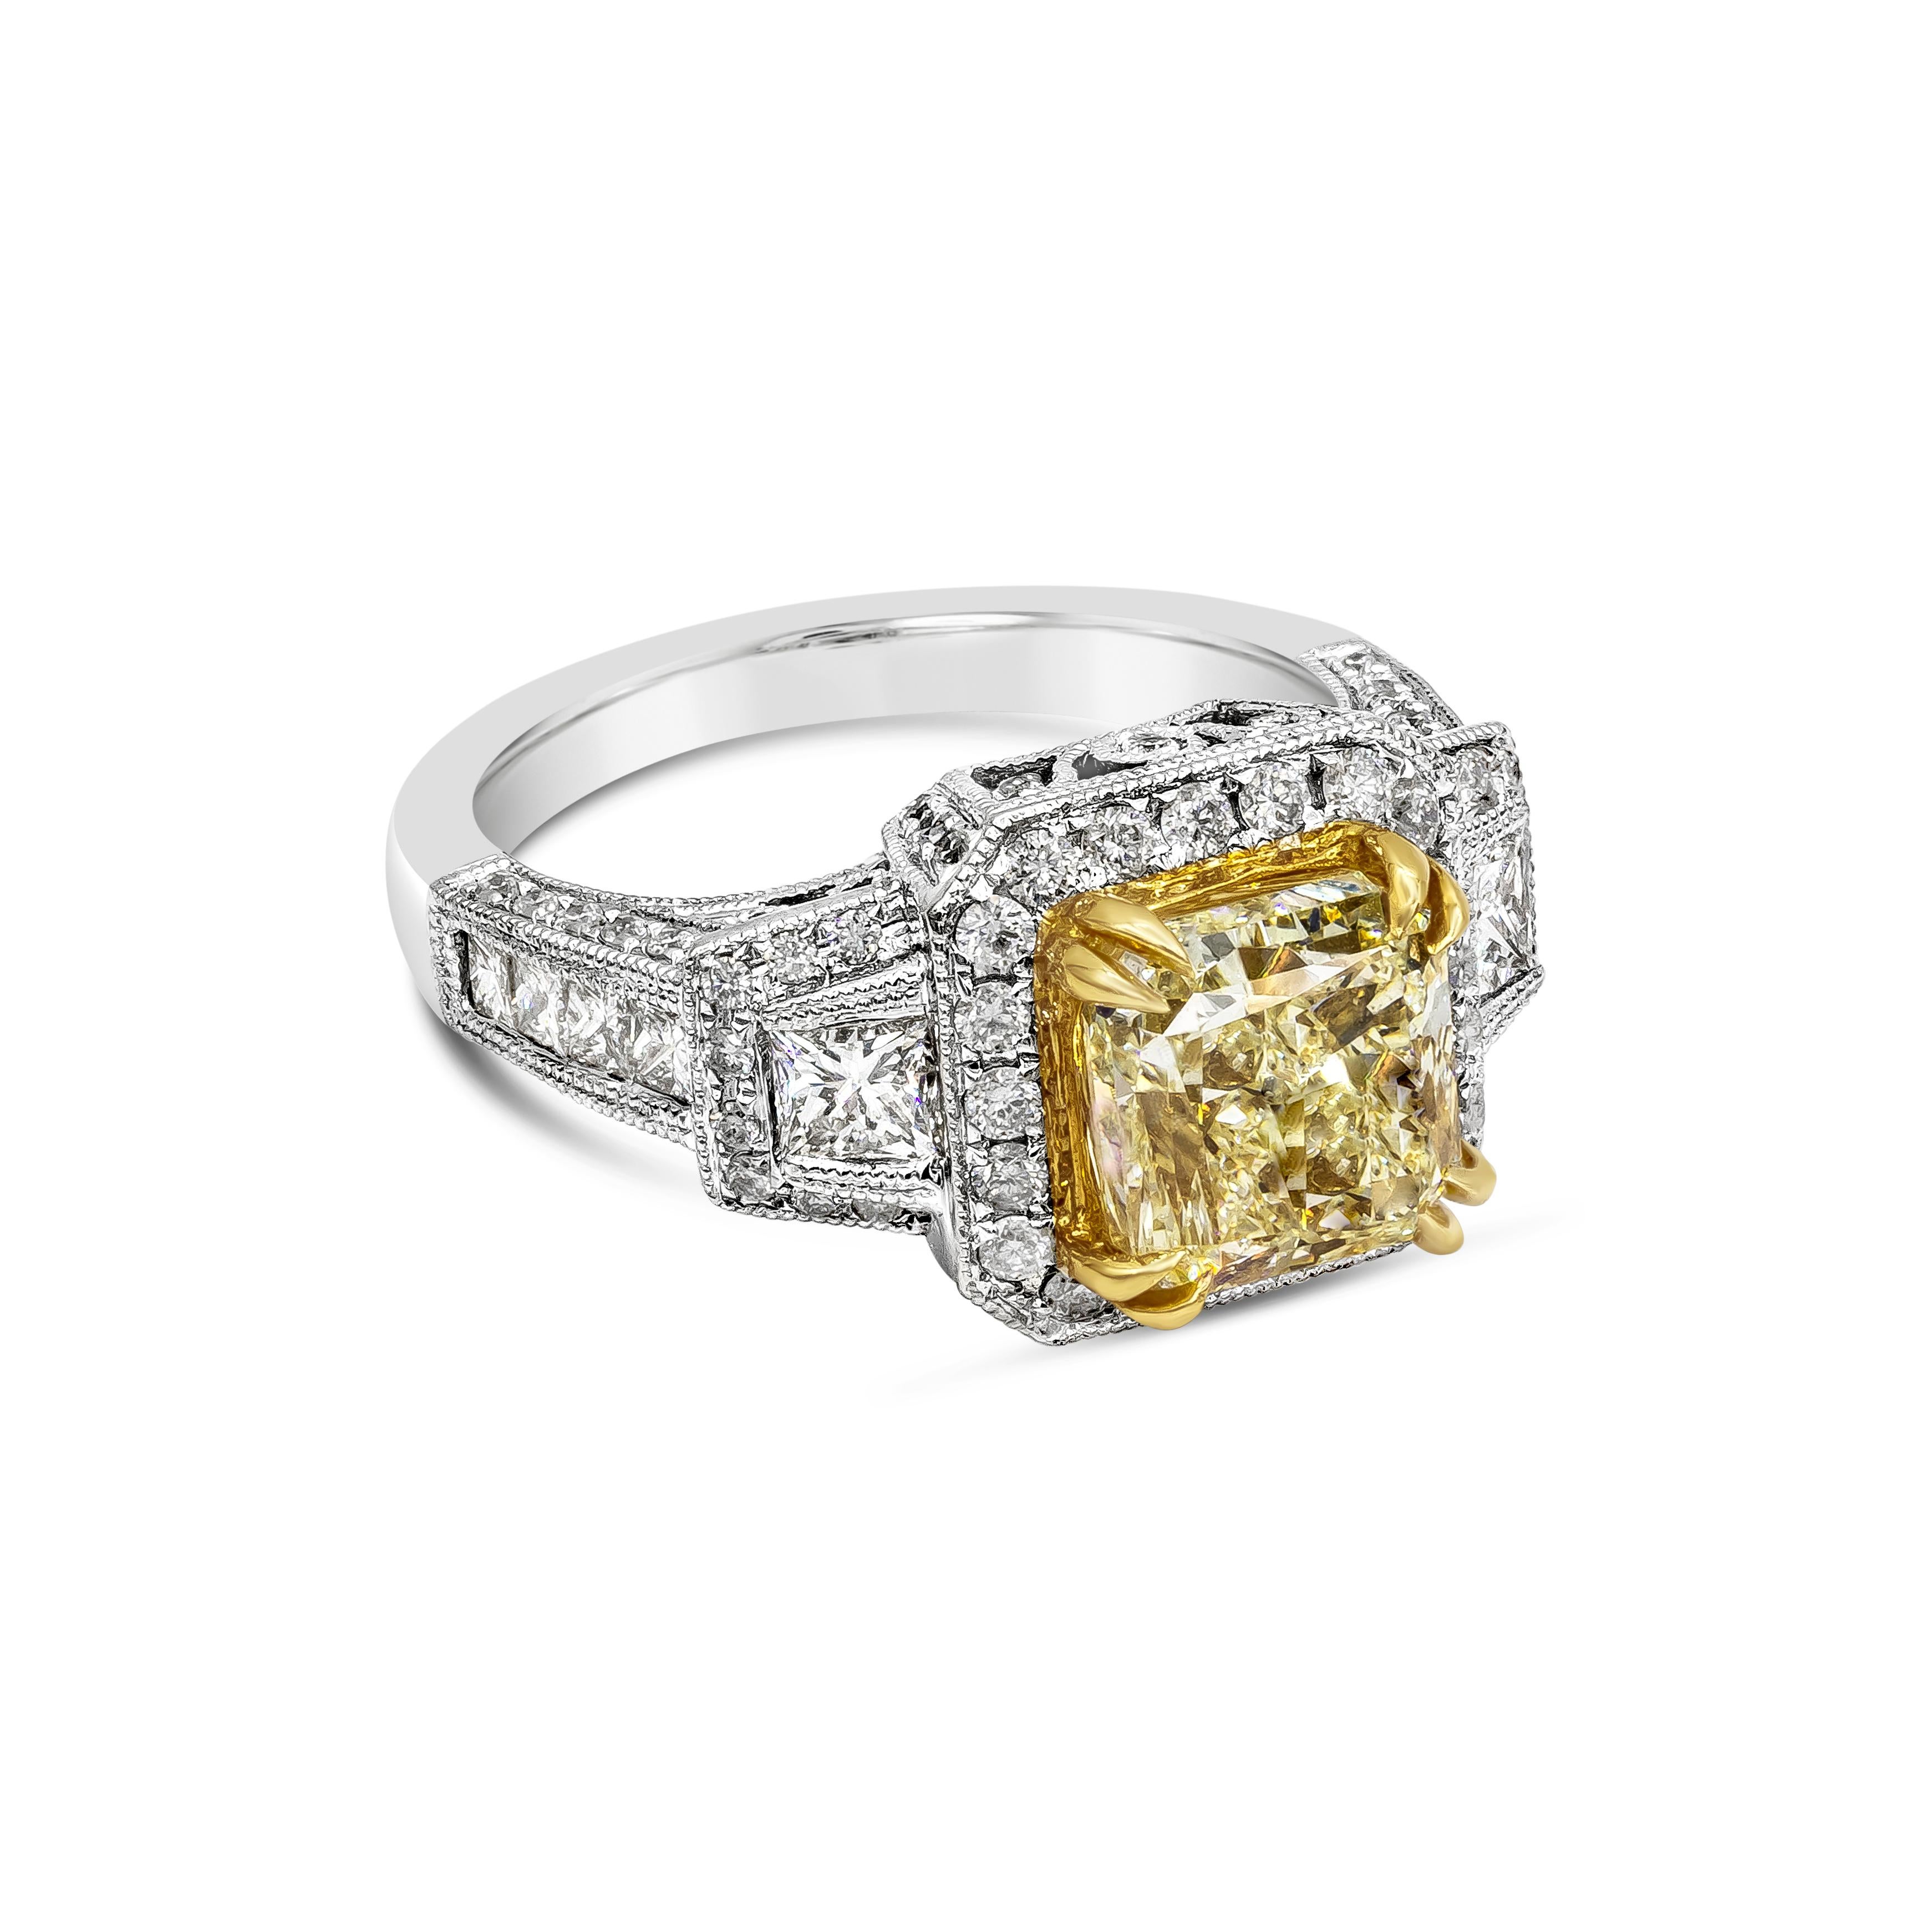 Bague de fiançailles de style ancien mettant en valeur un diamant jaune de taille radieuse de 3,40 carats certifié par le GIA, de couleur Y-3 et de pureté Si1, serti dans une monture en or jaune 18 carats à huit griffes. Entouré de diamants ronds en